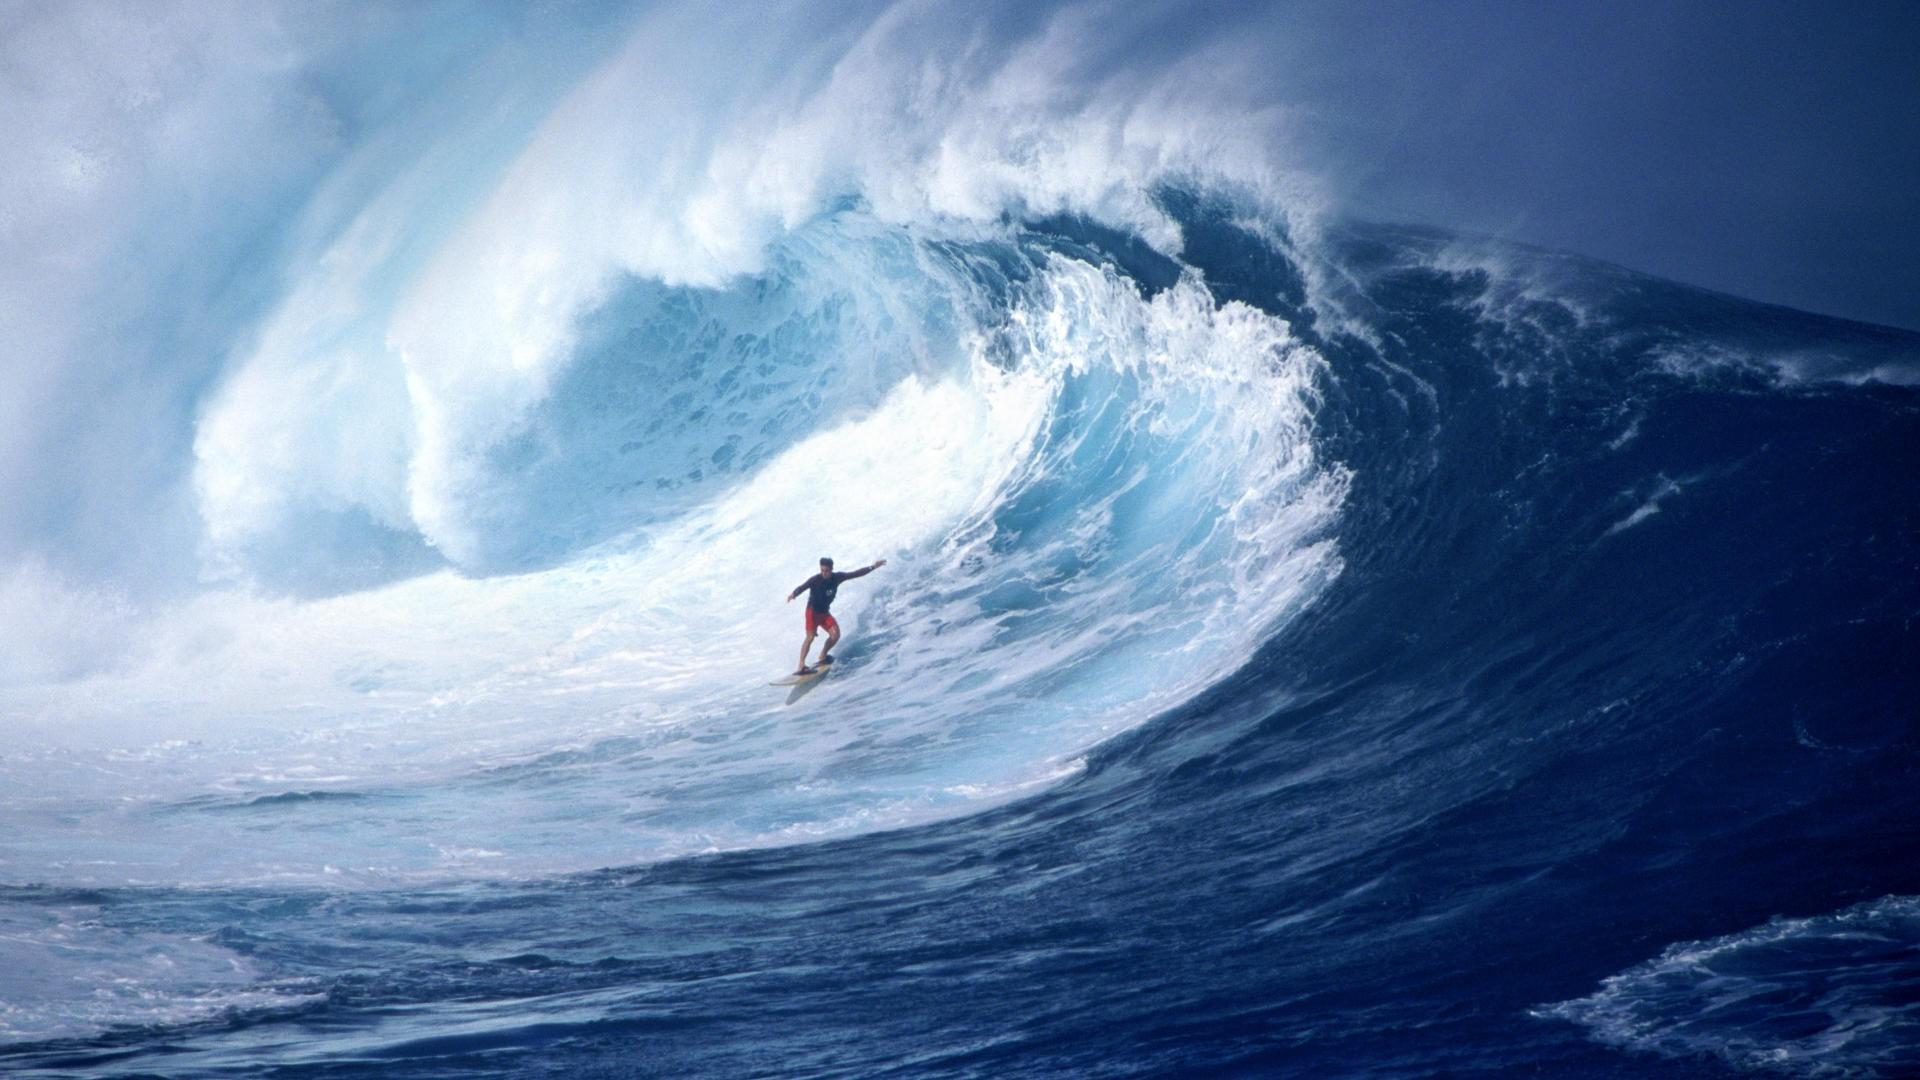 A surfer rides a big wave